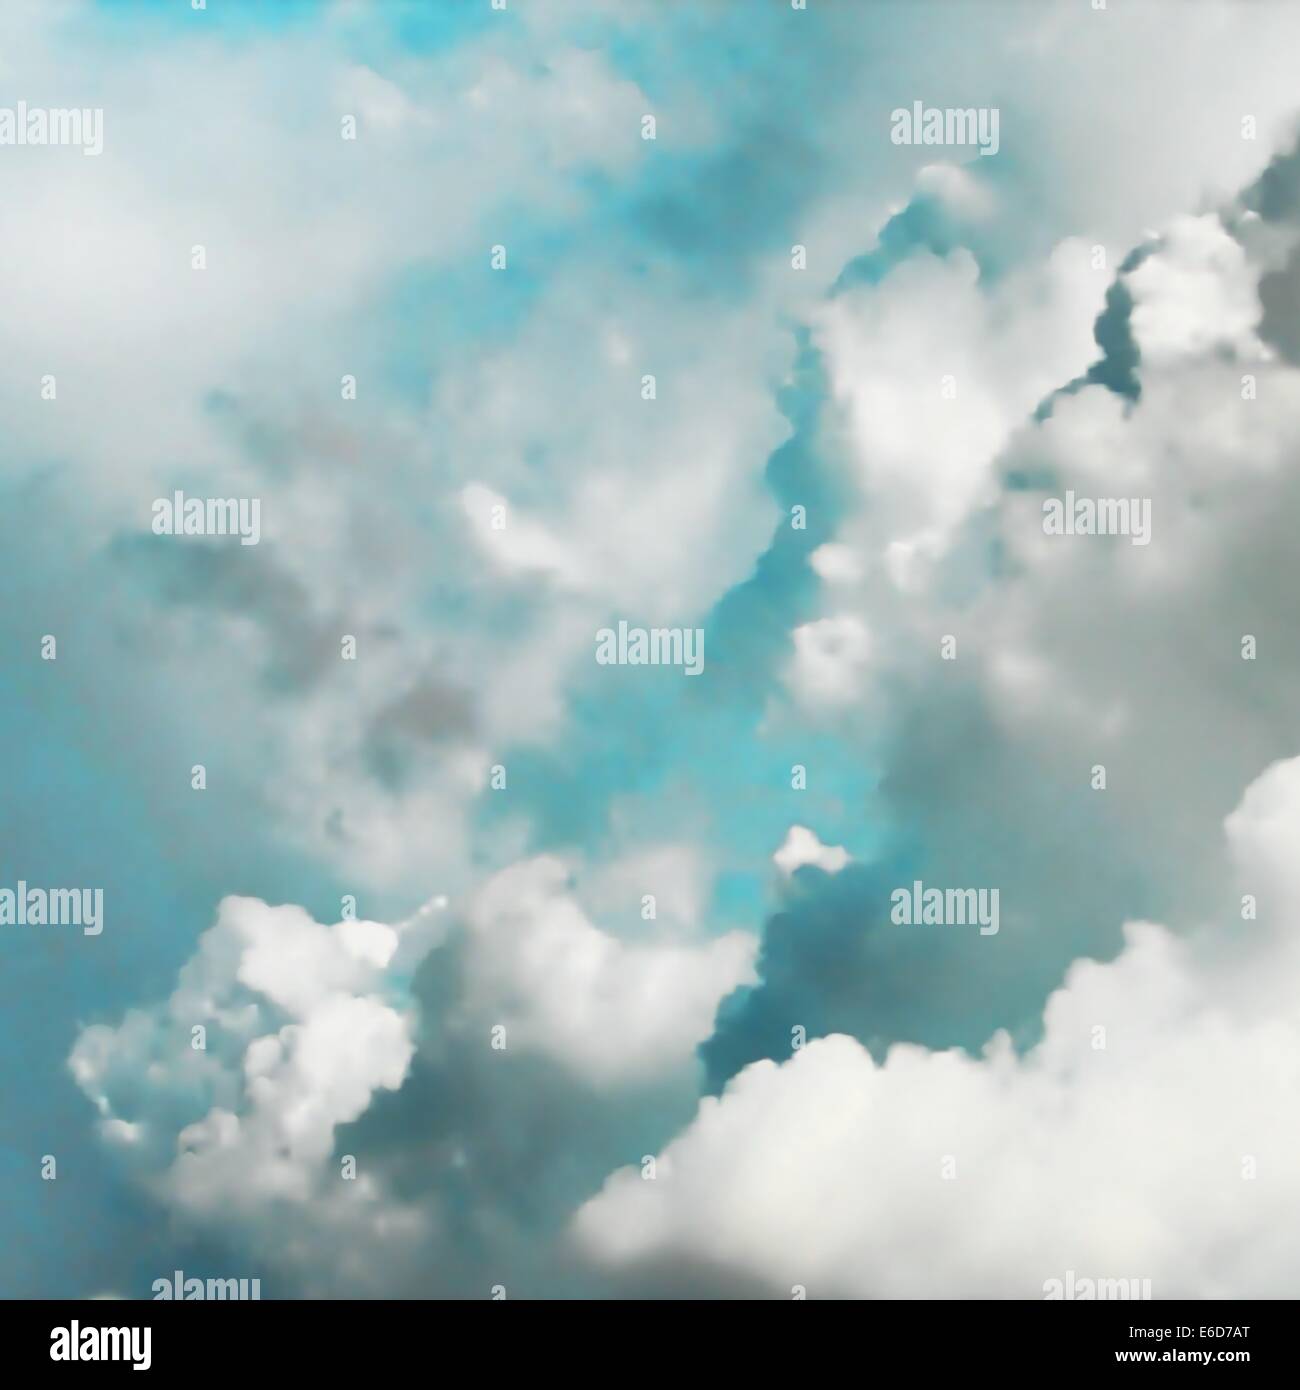 Editierbare Vektor-Illustration der Dicke Cumuluswolken türkisfarbenen Himmel gemacht mit einem Verlaufsgitter Stock Vektor